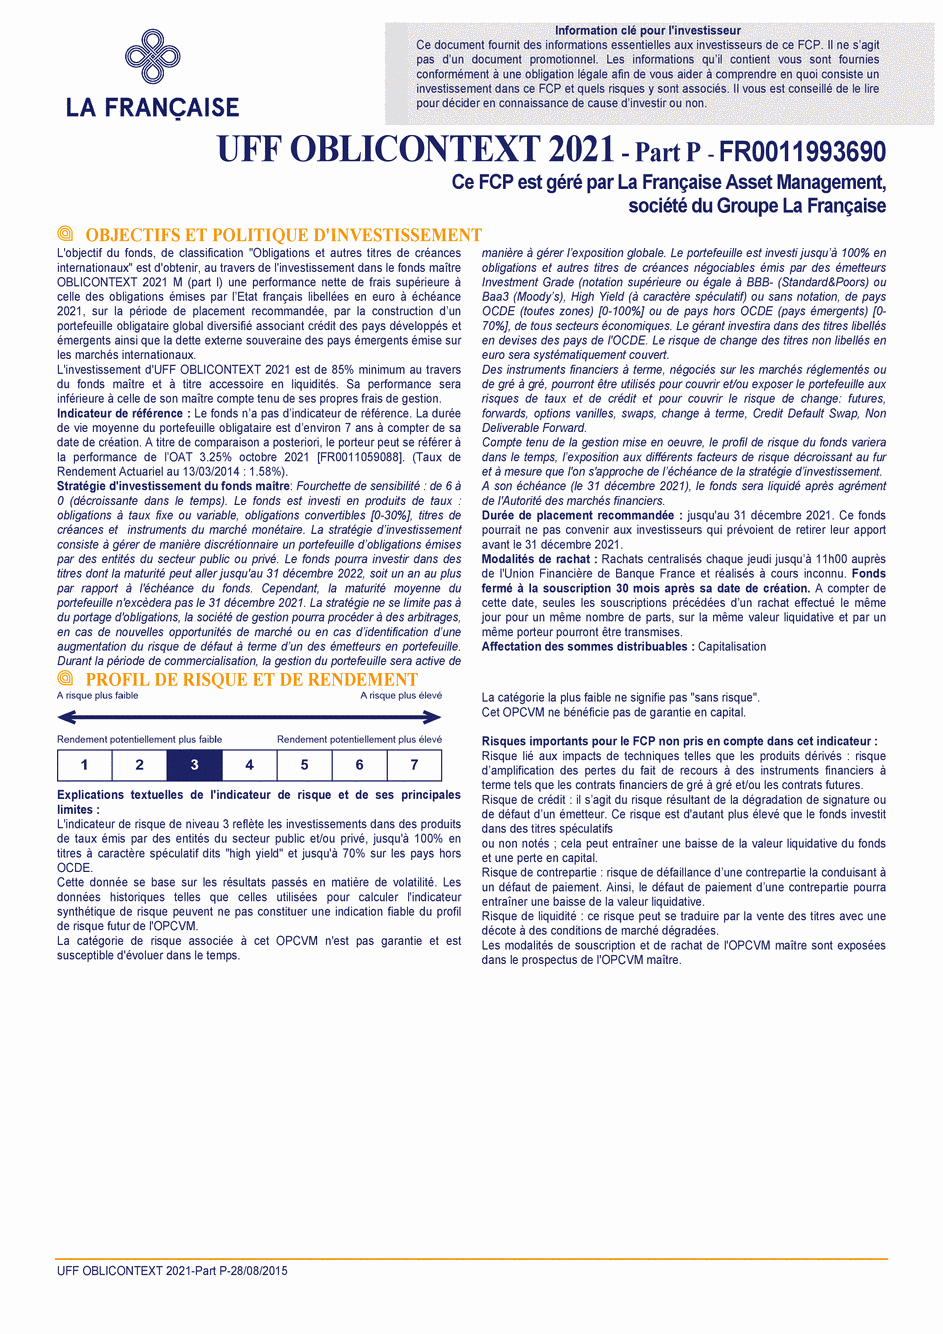 DICI UFF OBLICONTEXT 2021 - Part P - 28/08/2015 - Français